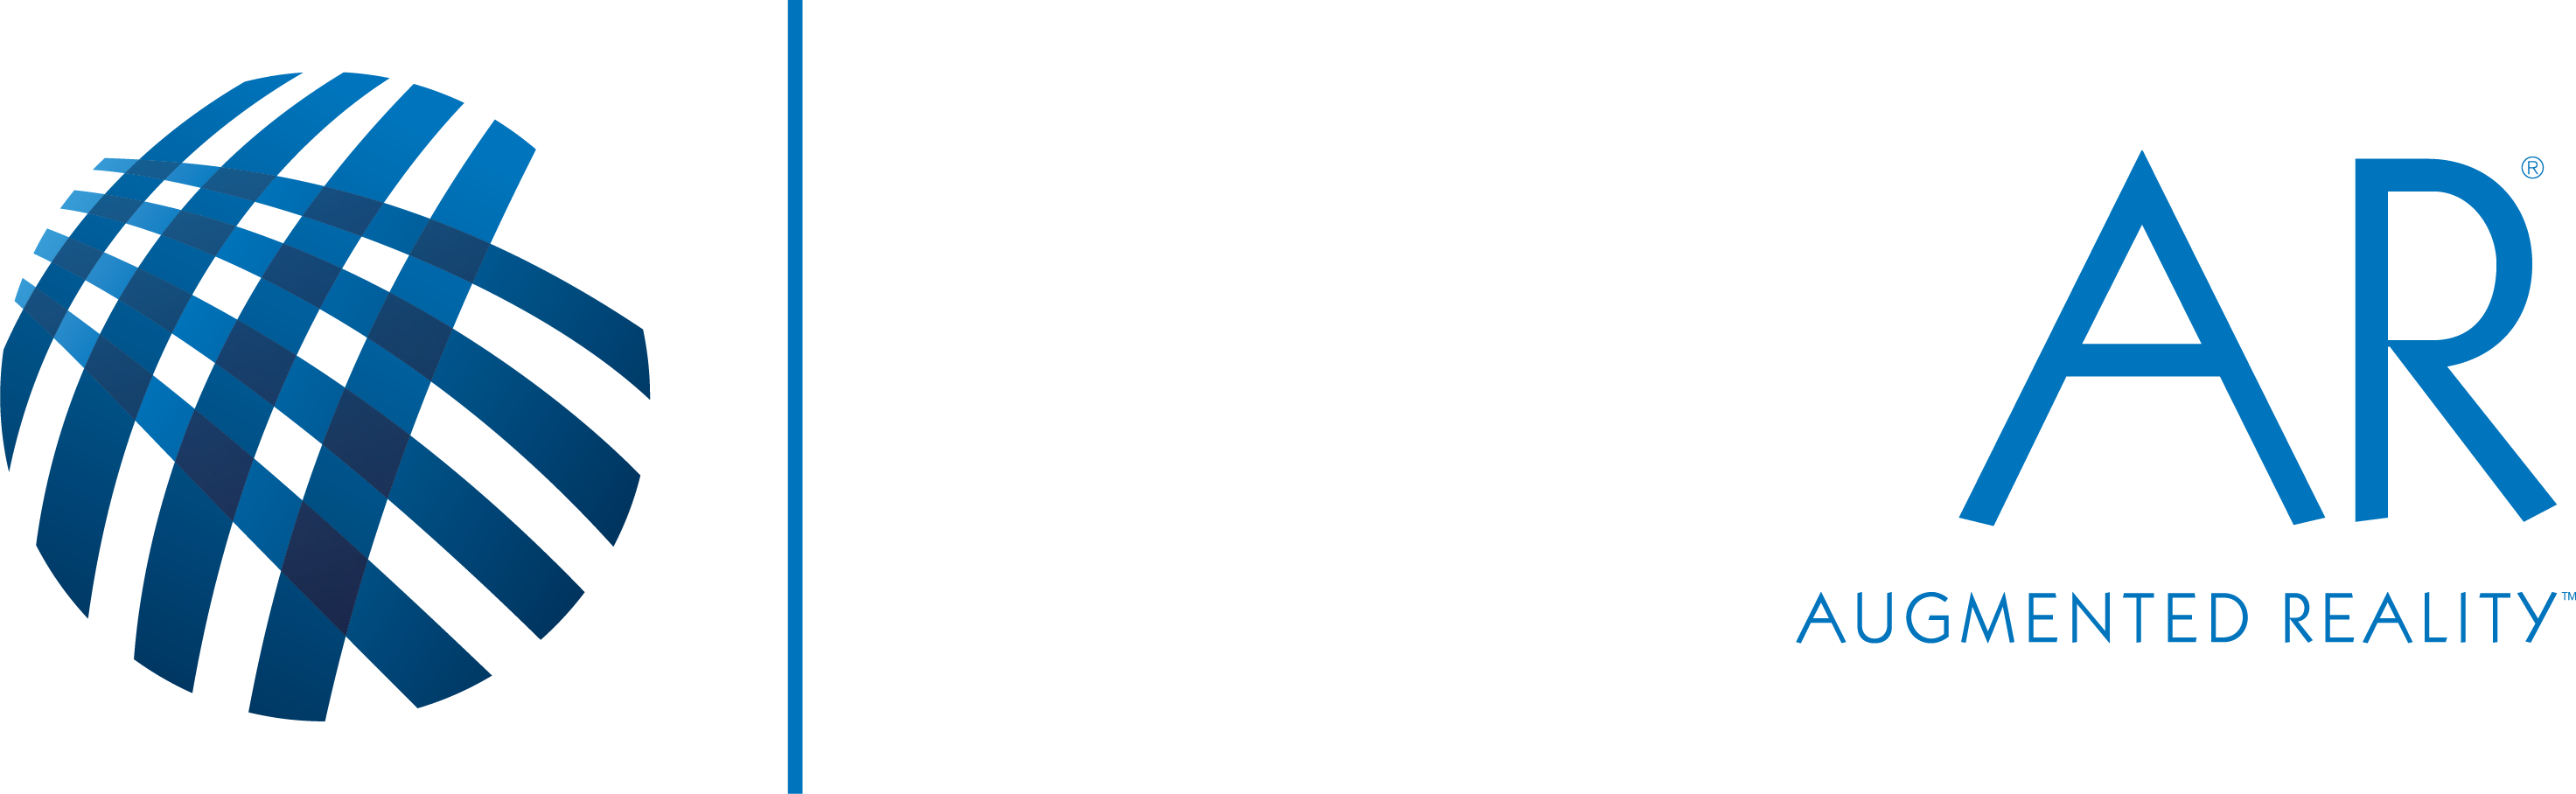 LENSAR logo